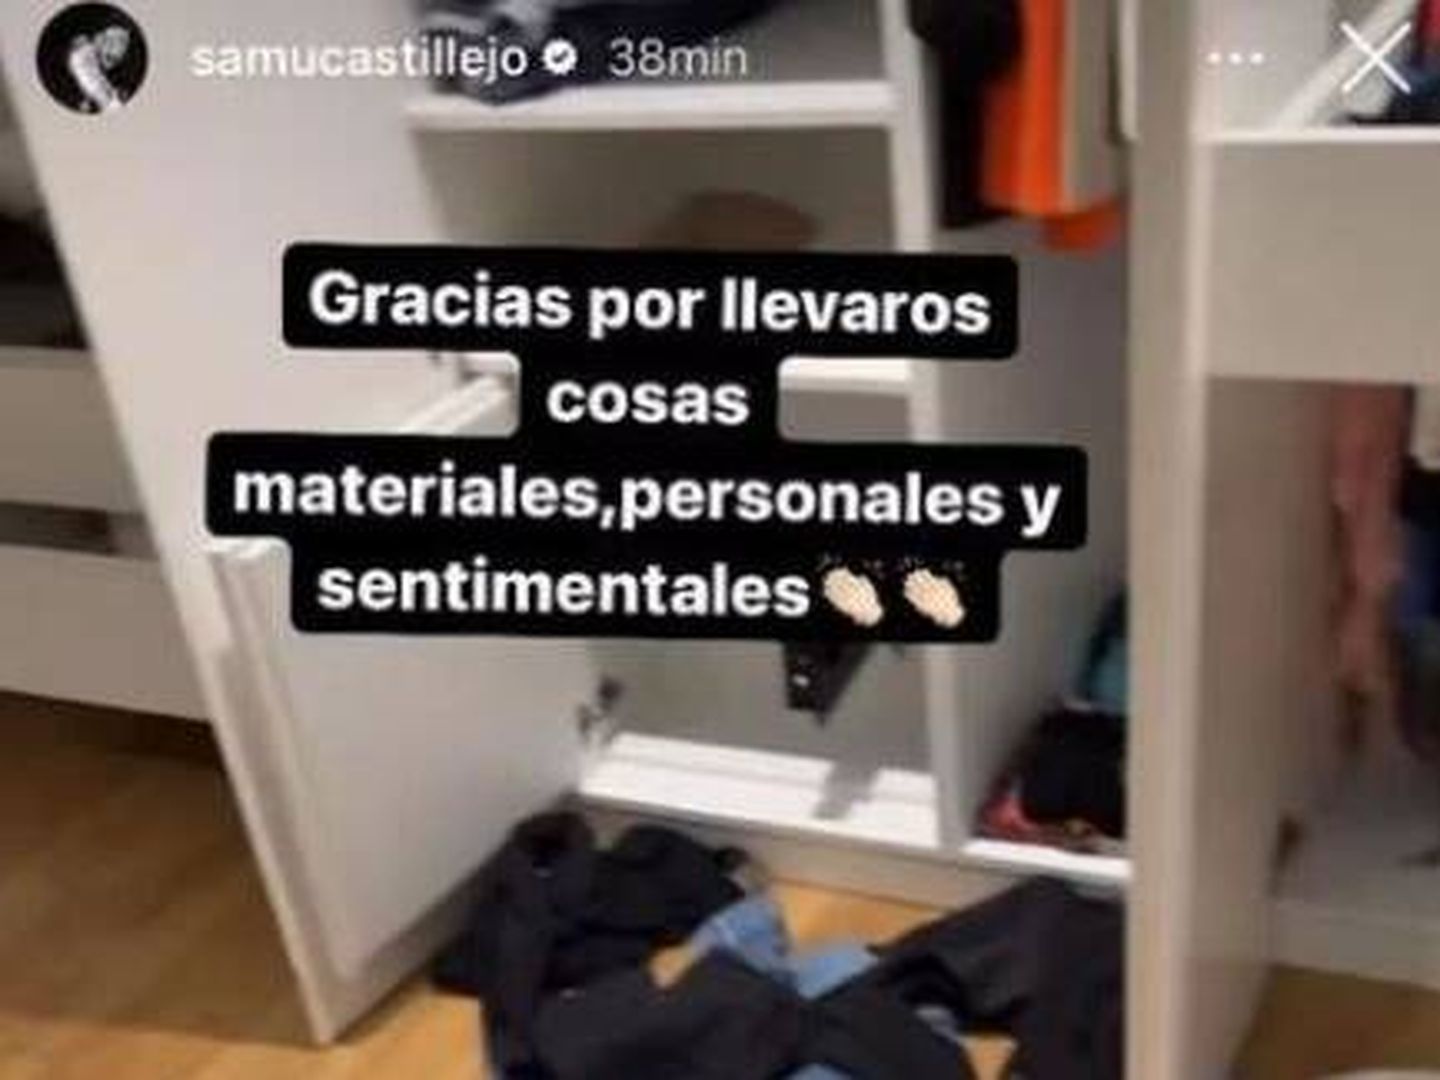 La publicación de Samu Castillejo en Instagram después de que entrara en su casa.